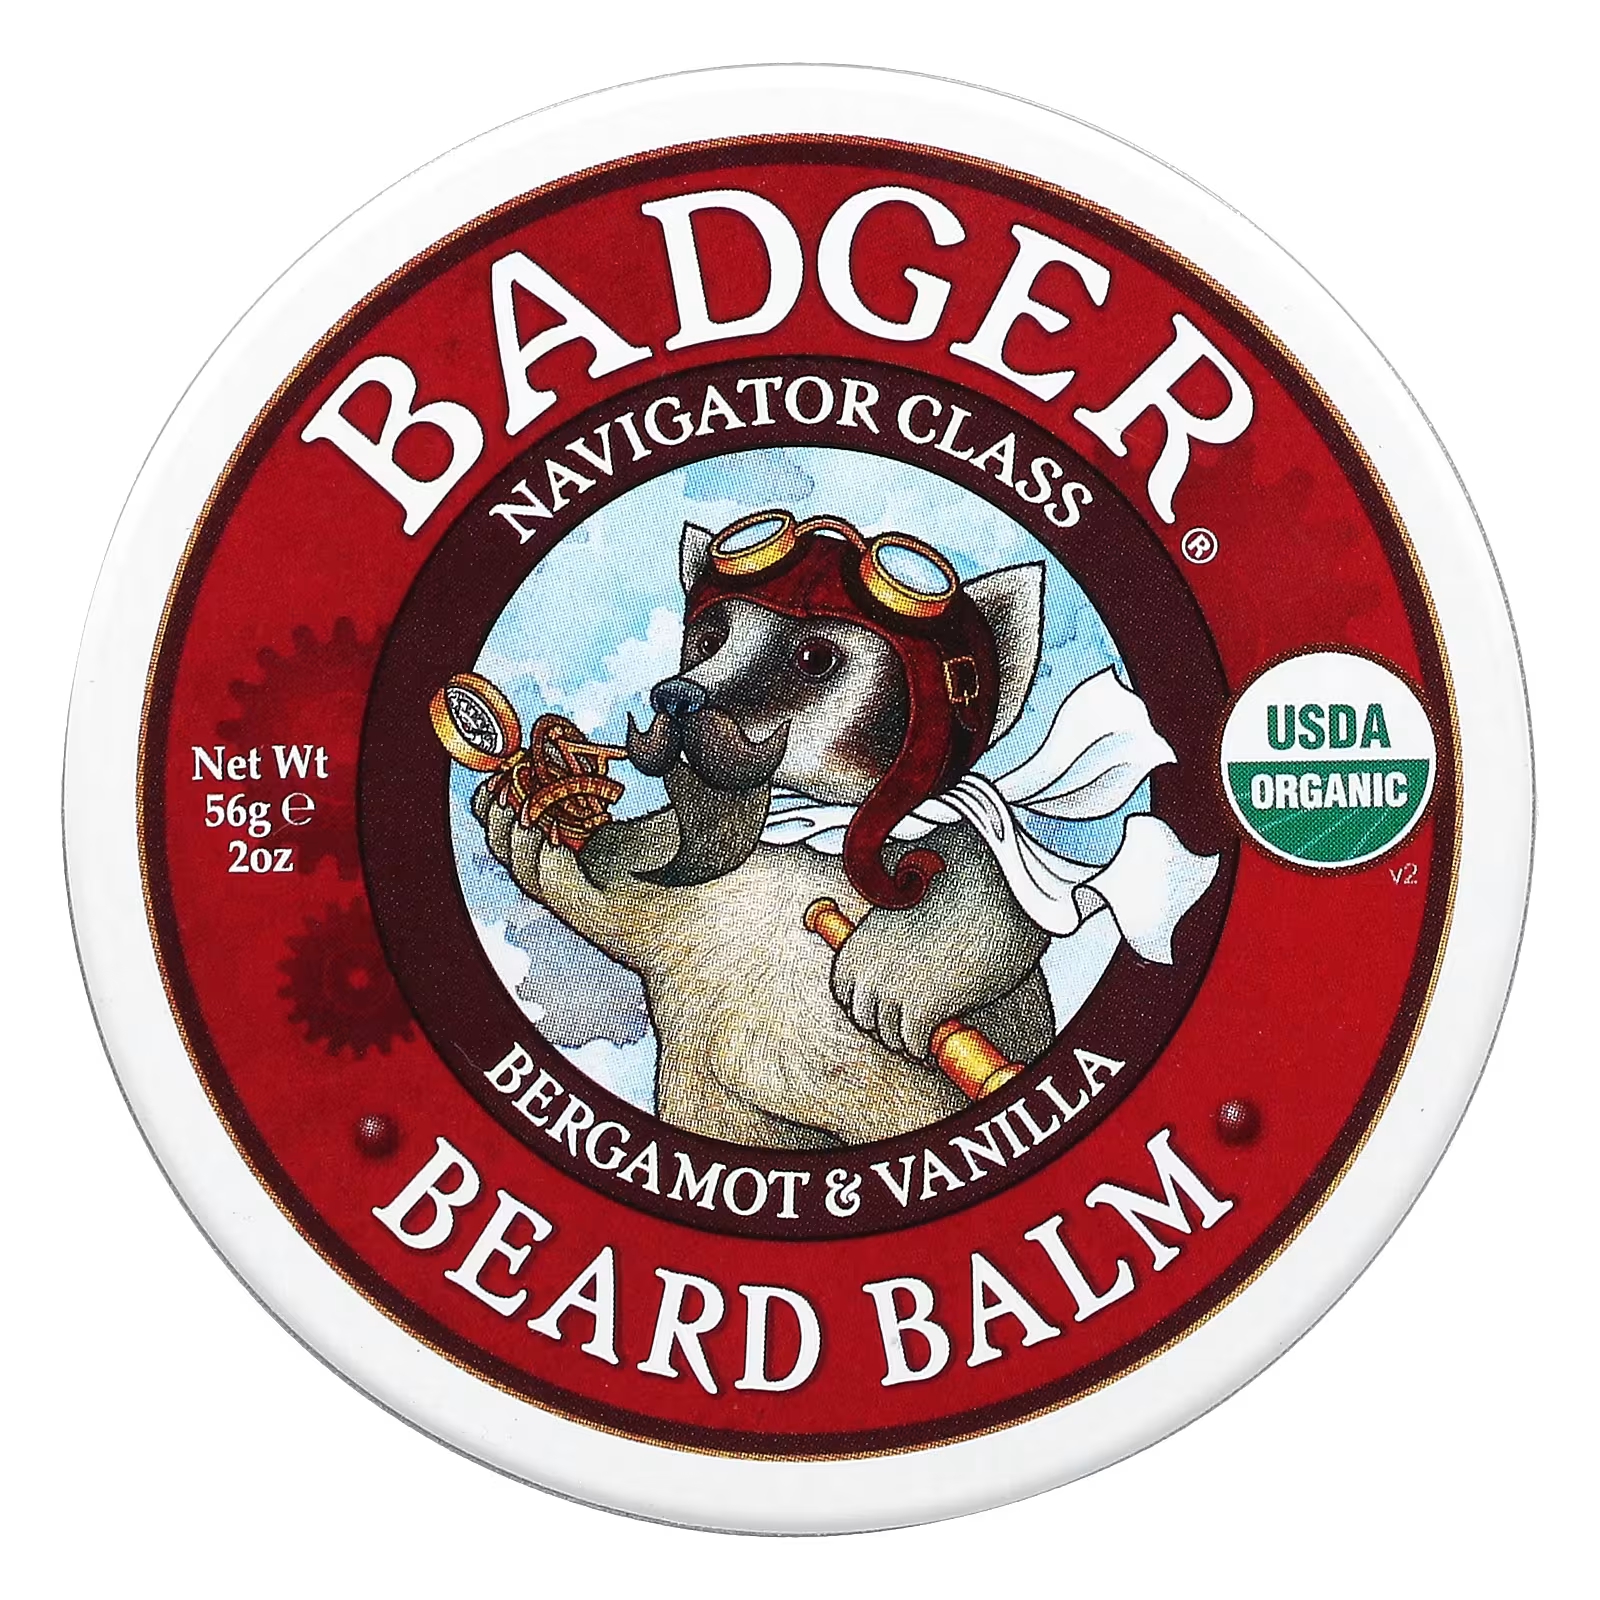 Бальзам для бороды Badger Company, 56 г badger company бальзам badger для сухой и чувствительной кожи без запаха 56 г